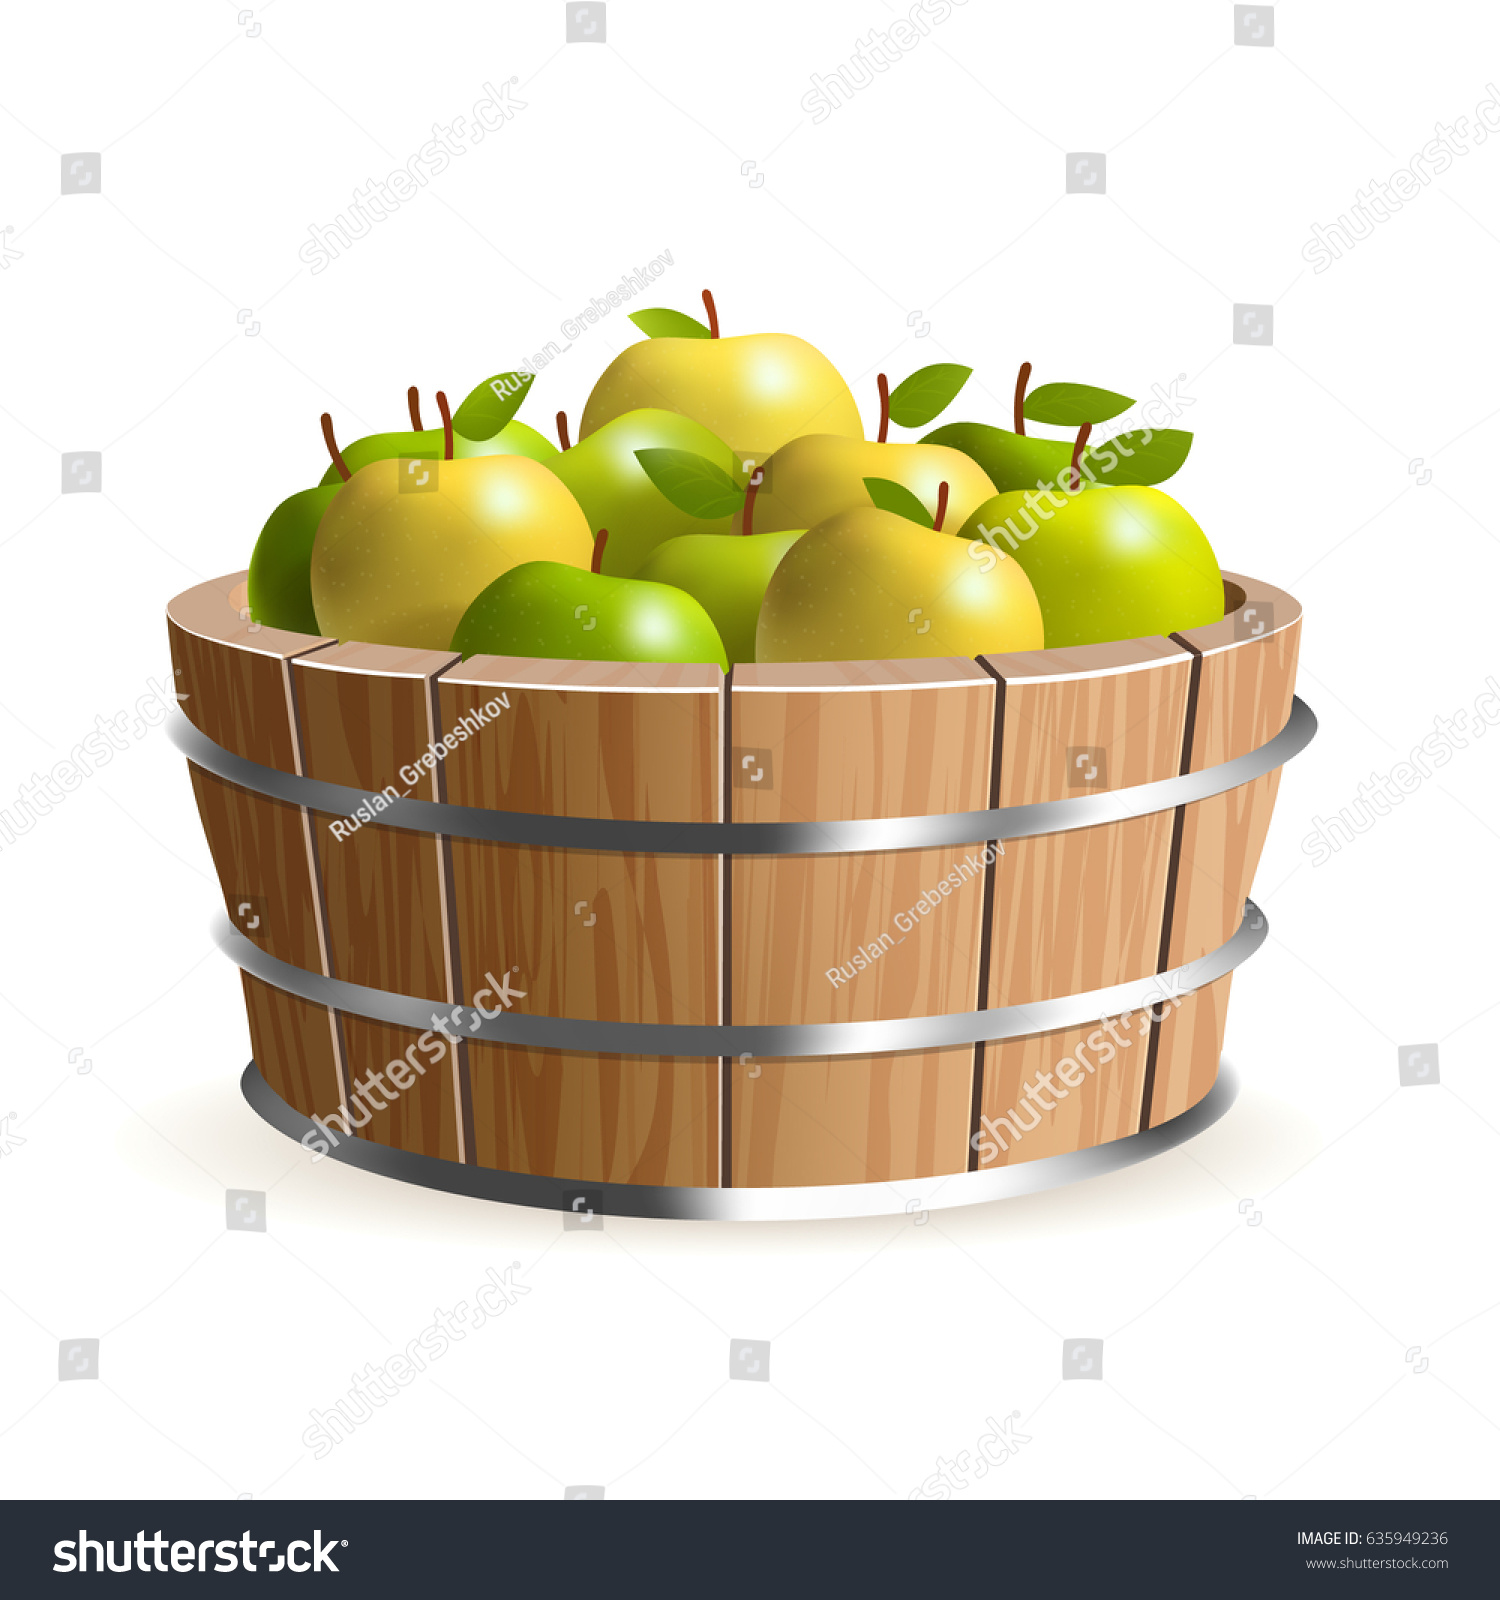 Wooden Bucket Juicy Apples Stock Vector 635949236 - Shutterstock